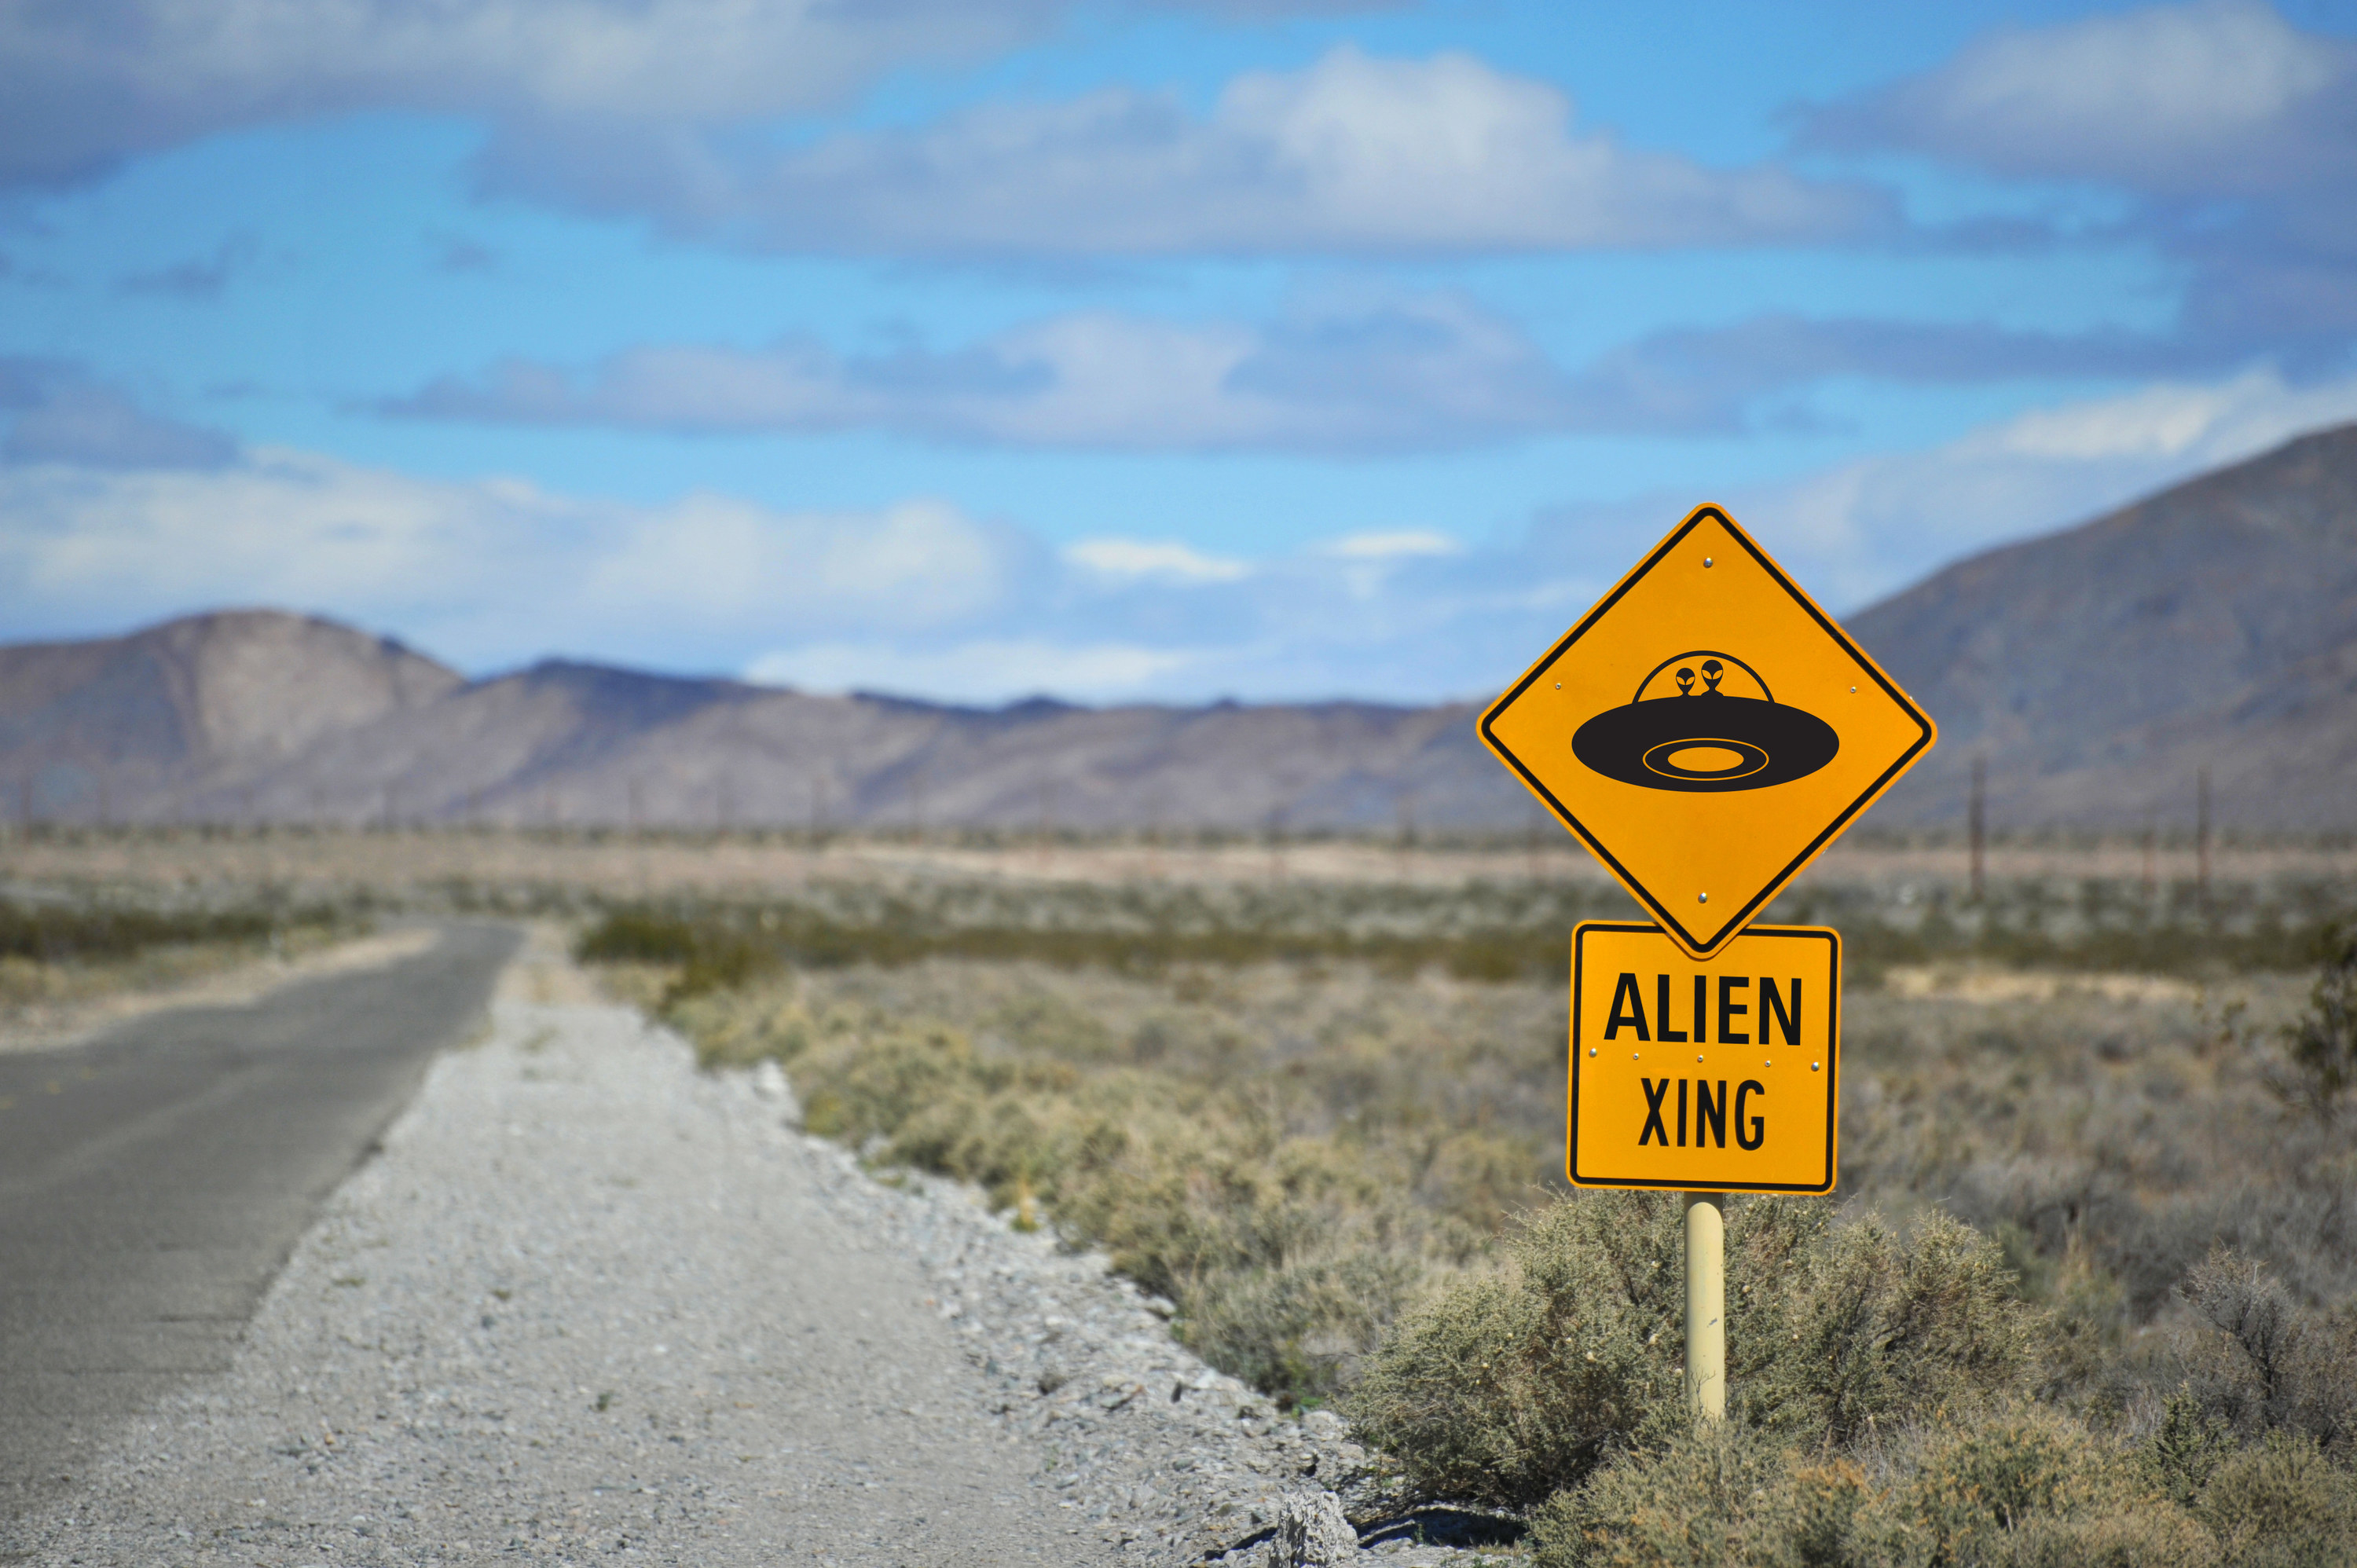 Alien xing sign